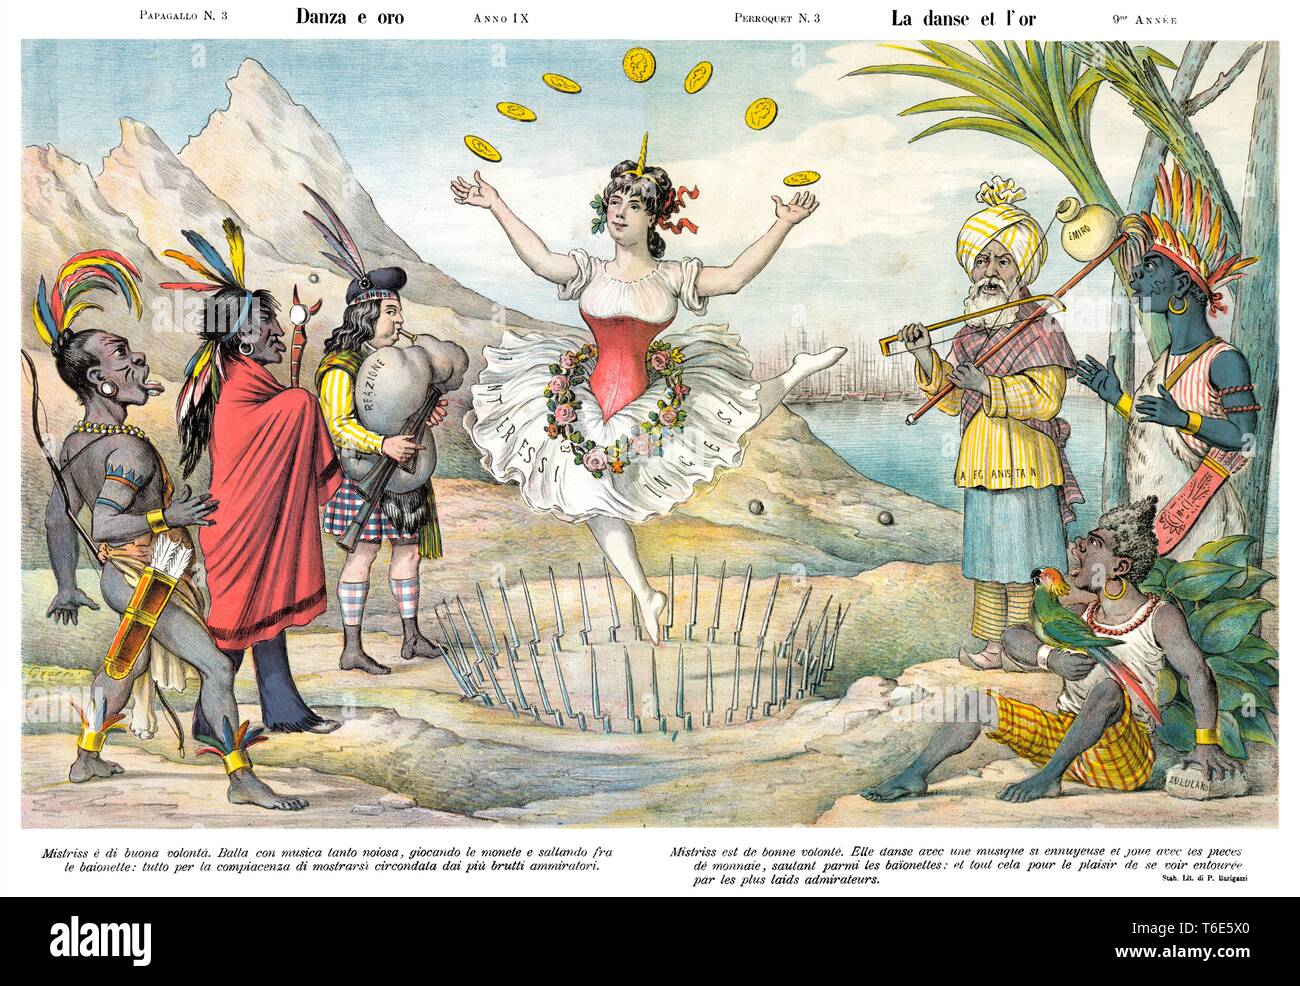 La danza y el oro, por caricatura satírica semanal Il Papagallo 1881 Foto de stock